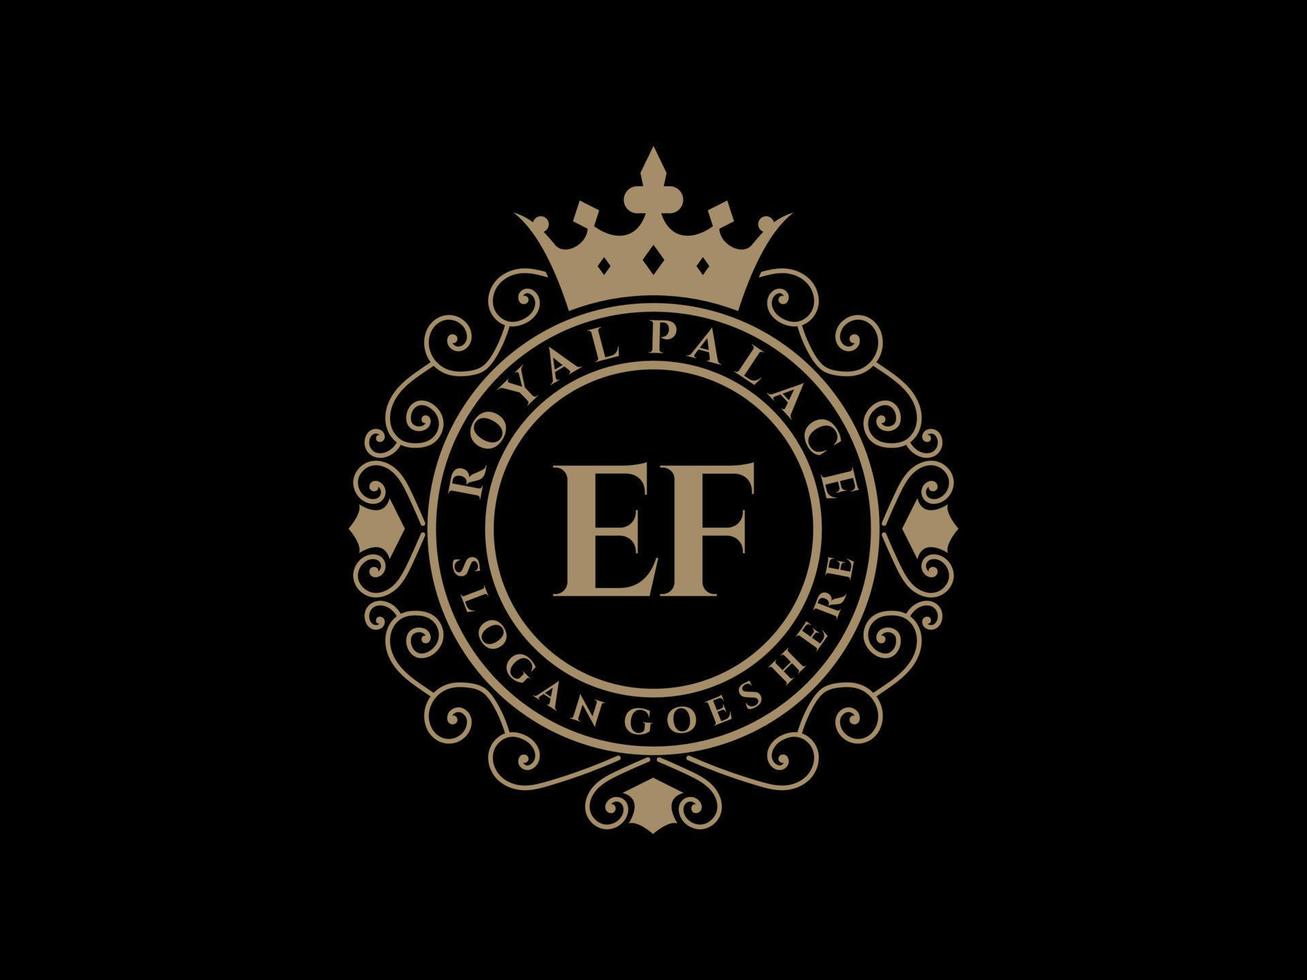 lettre ef logo victorien de luxe royal antique avec cadre ornemental. vecteur